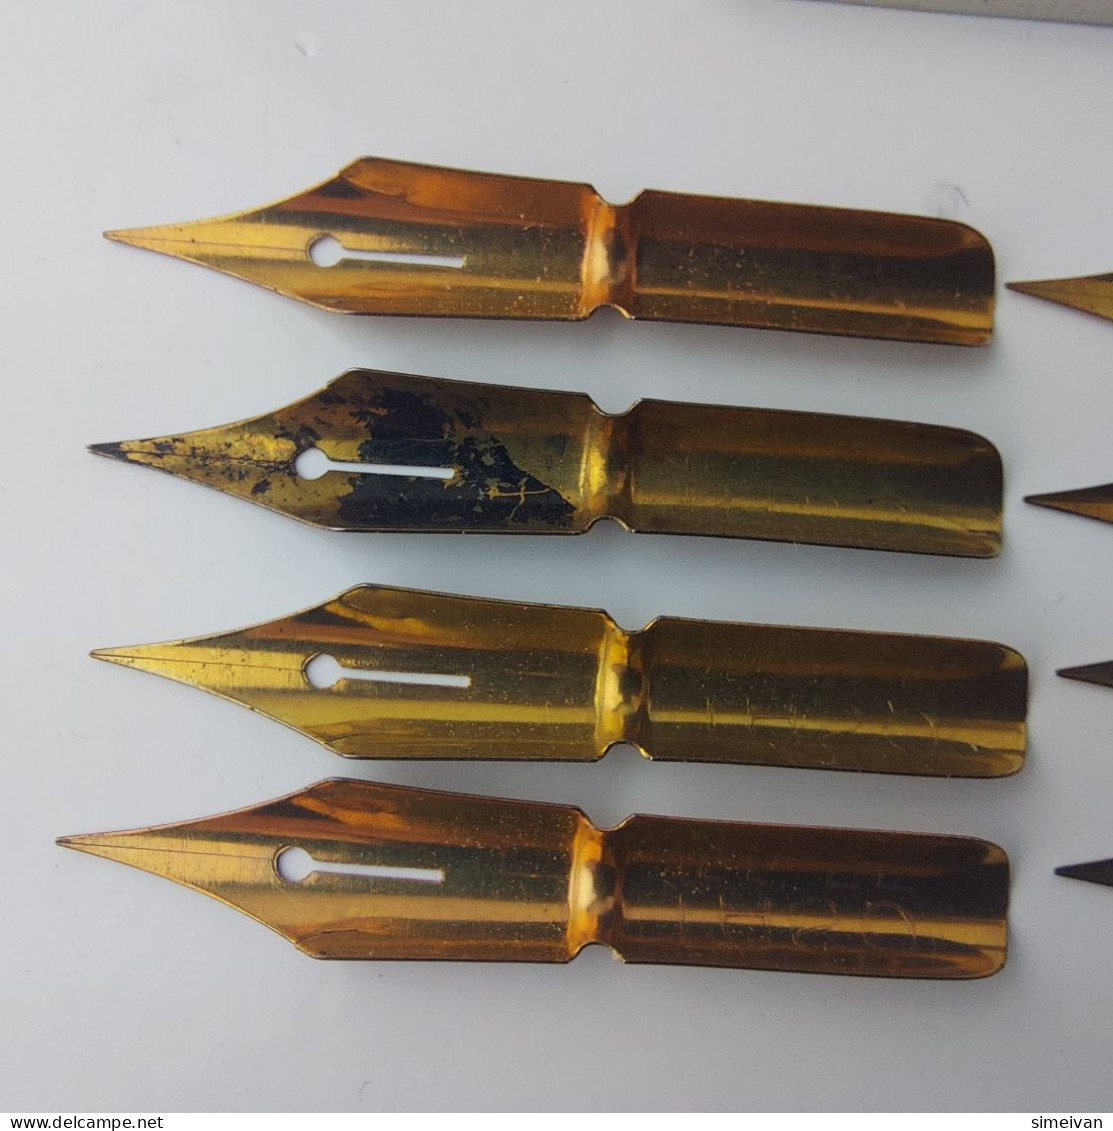 Vintage Dip Pen Nibs TASO 155 EF Feder 8 Pcs in Metal Box Calligraphy #5564